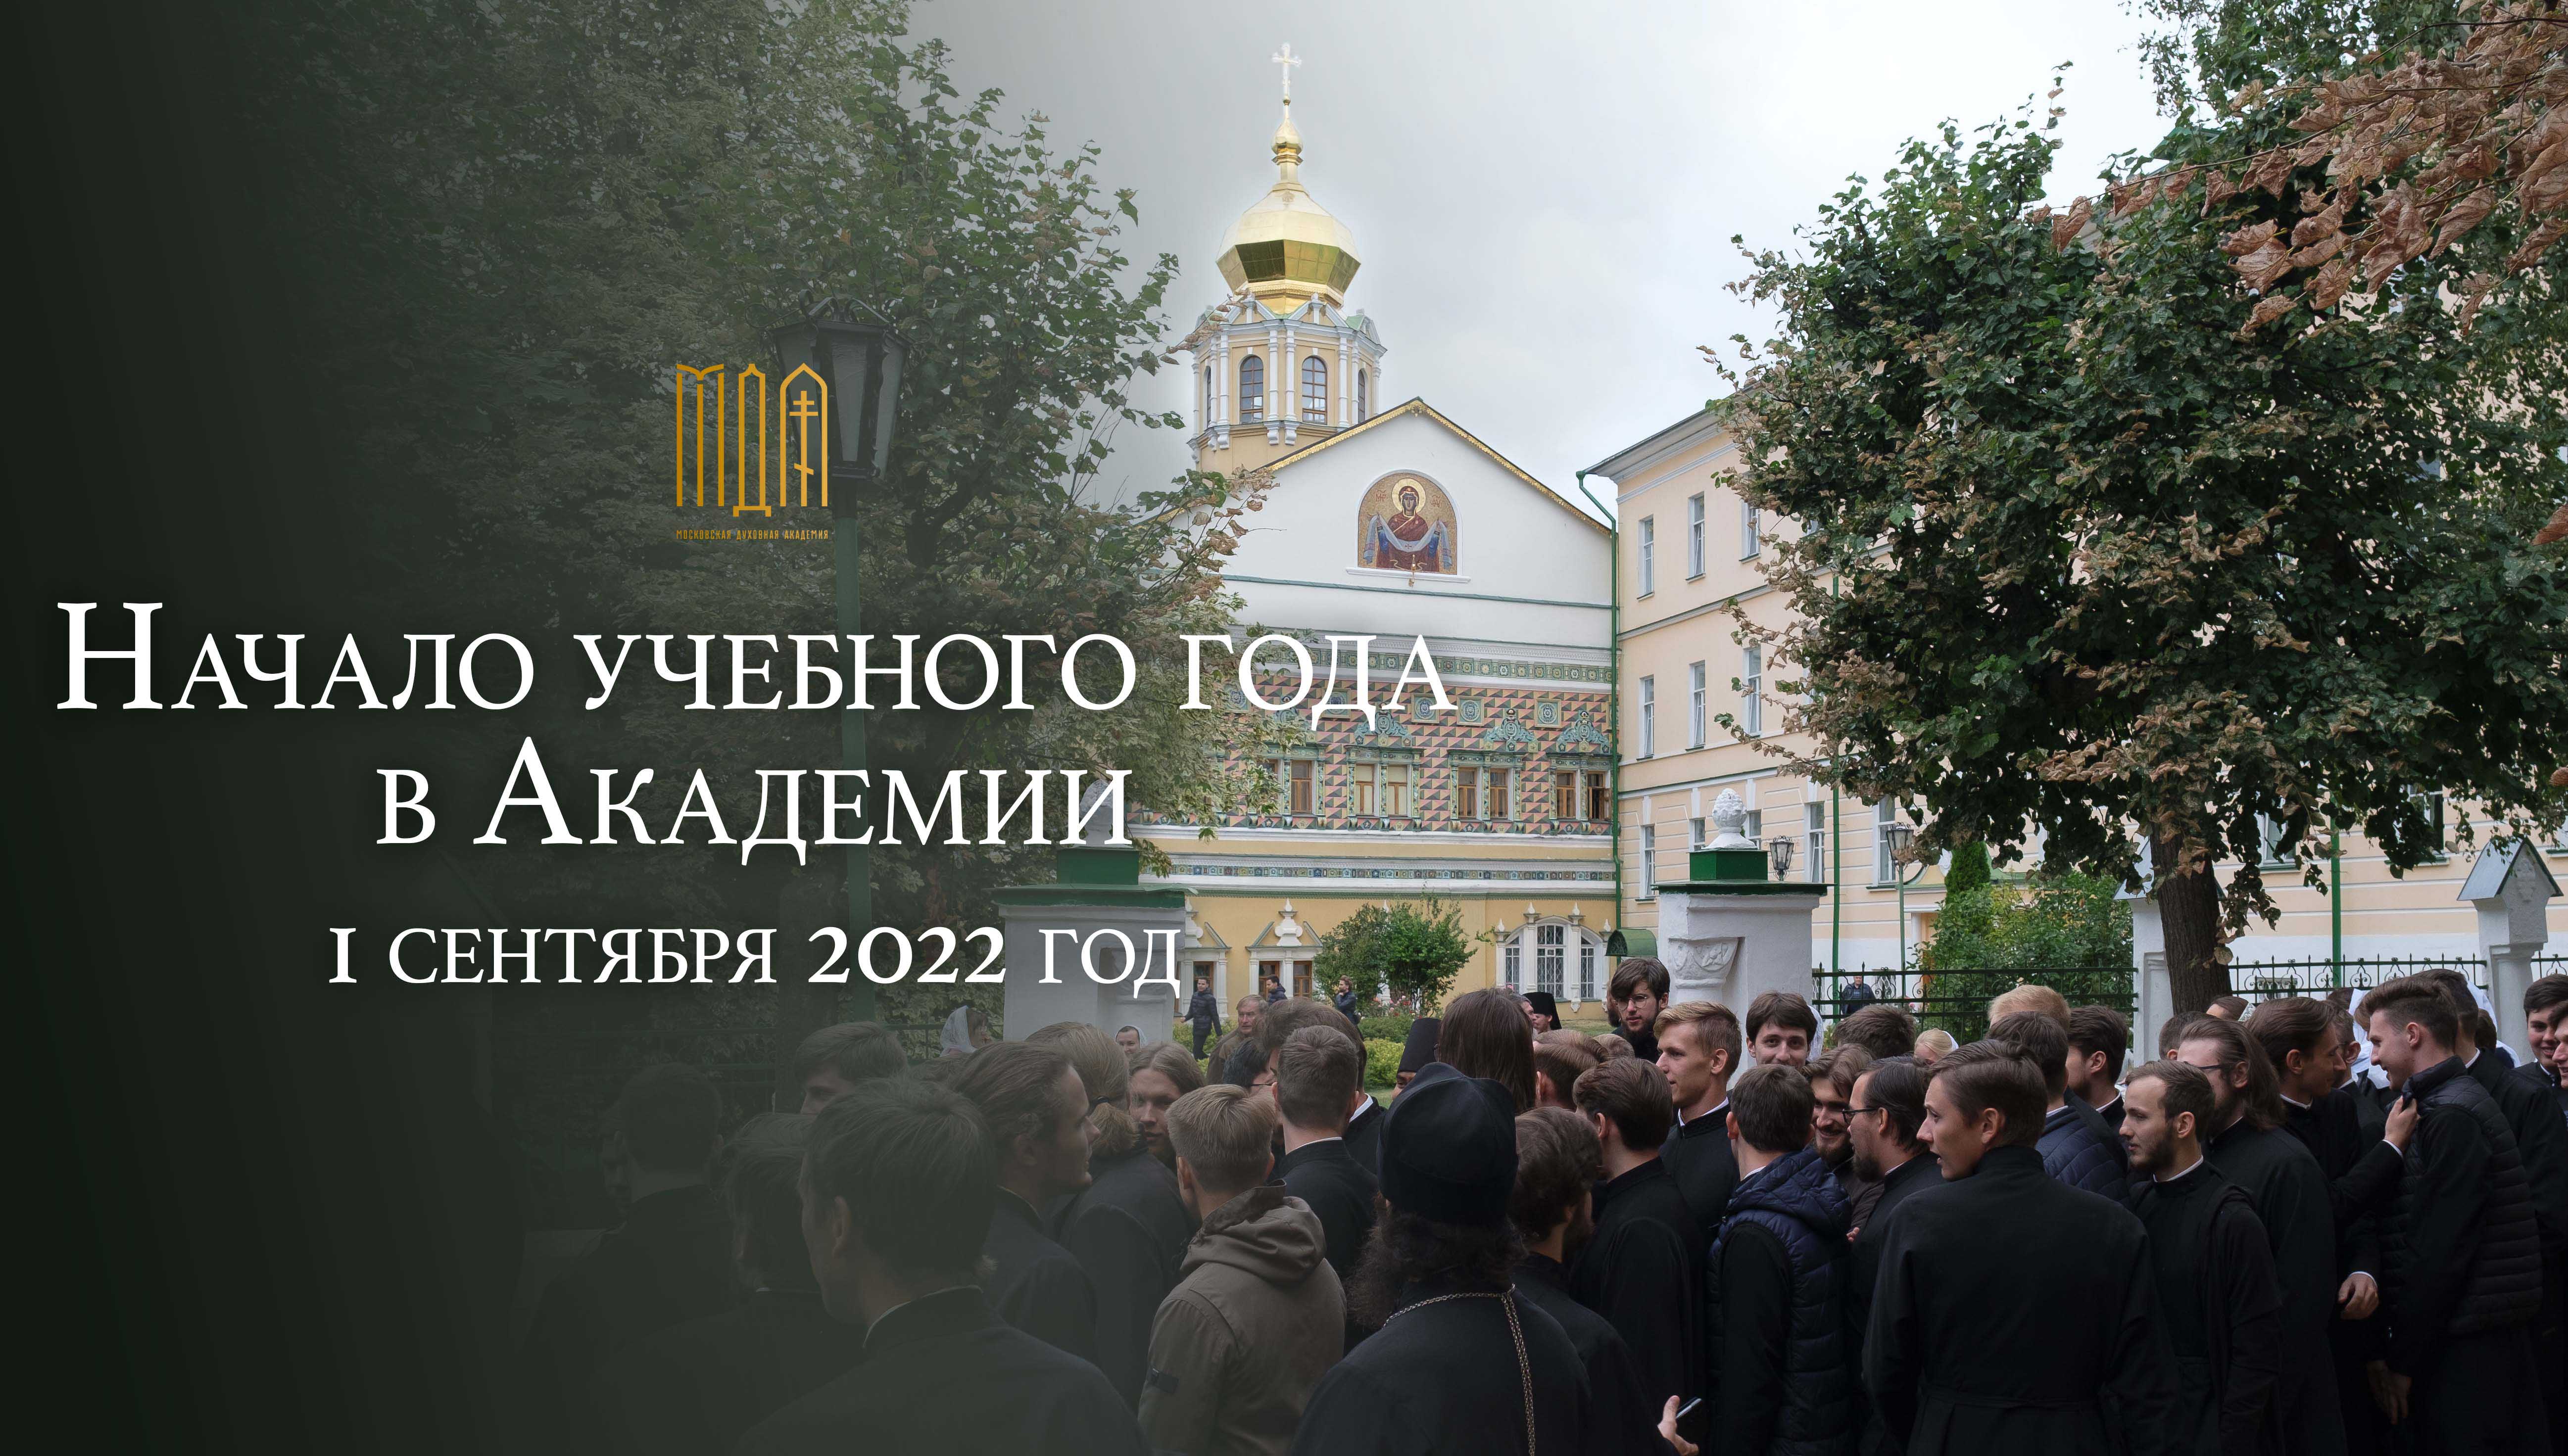 Начало учебного 2022-2023 года в Московской Духовной академии.

 


1 сентября 2022 г.
Виде